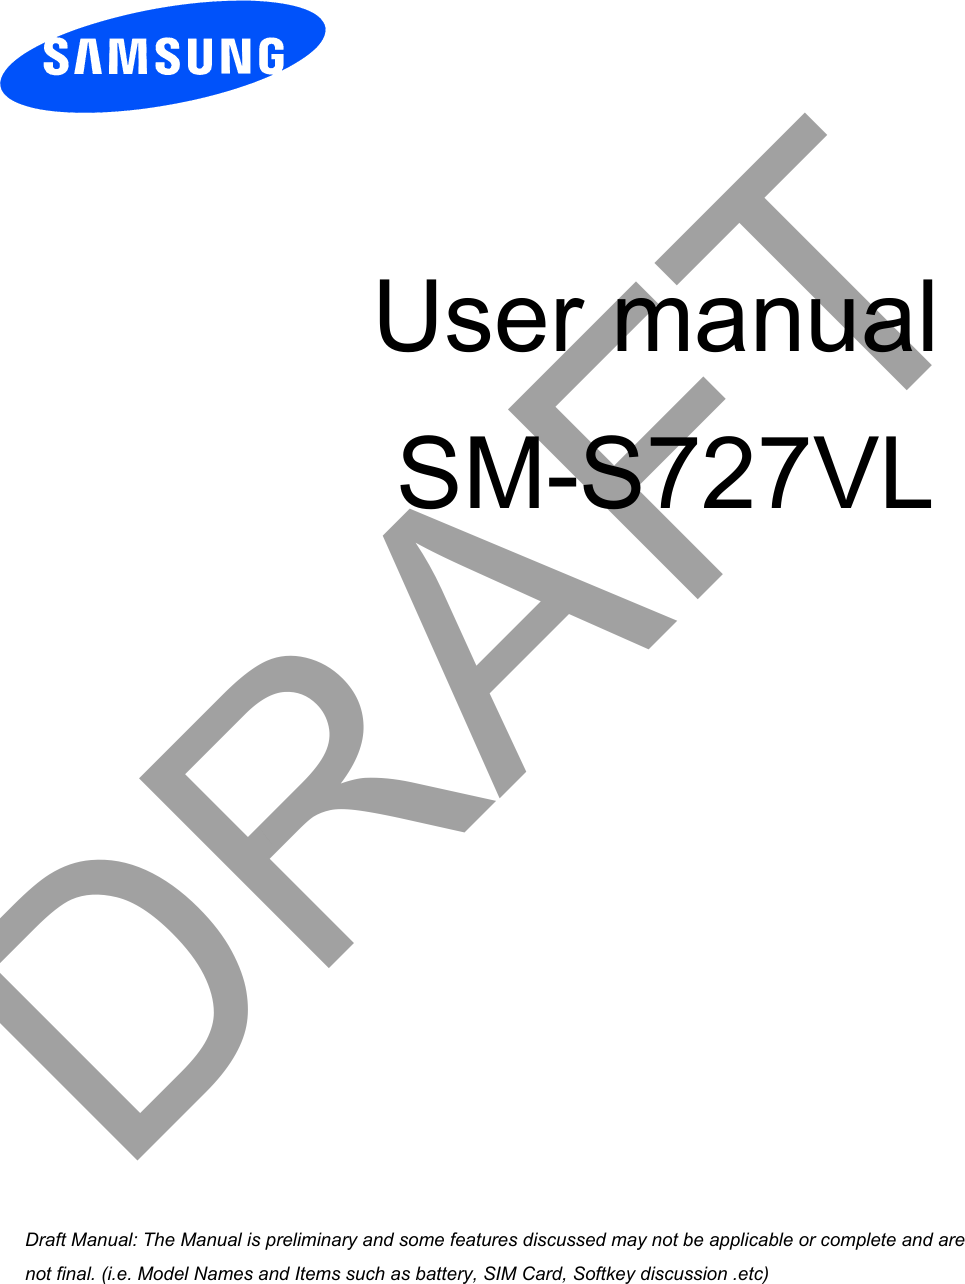 User manualSM-S727VLDRAFTa ana  ana  na and  a dd a n  aa   and a n na  d a and   a a  ad  dn 